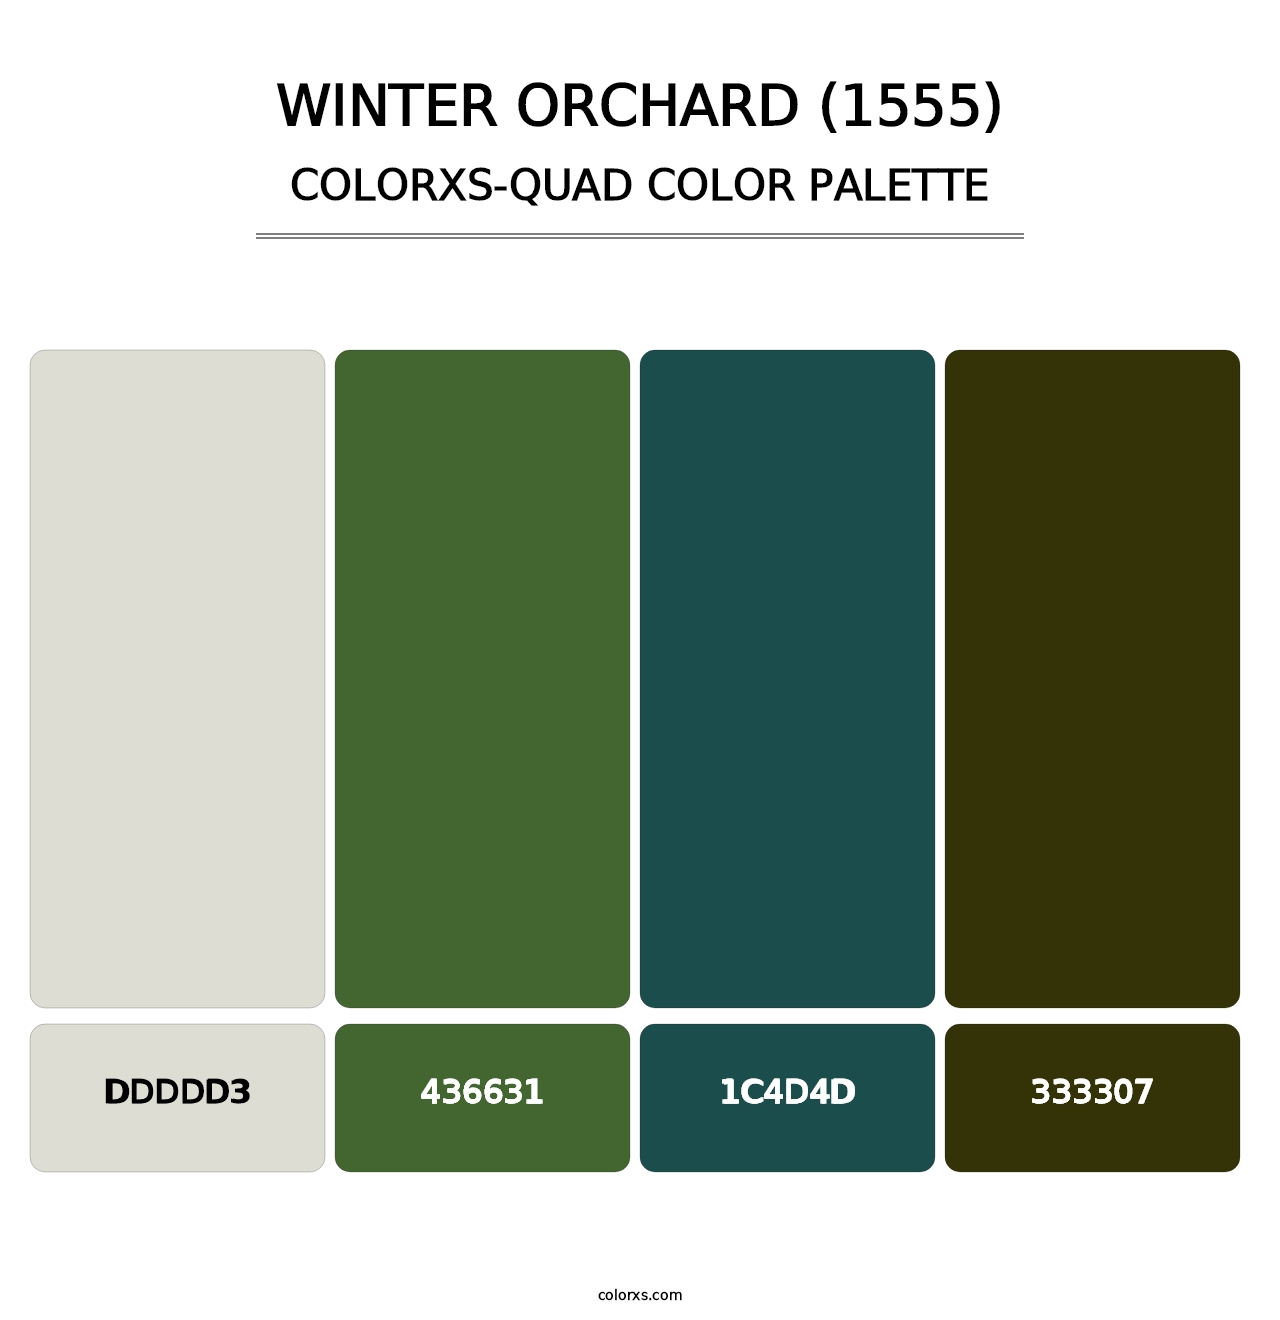 Winter Orchard (1555) - Colorxs Quad Palette